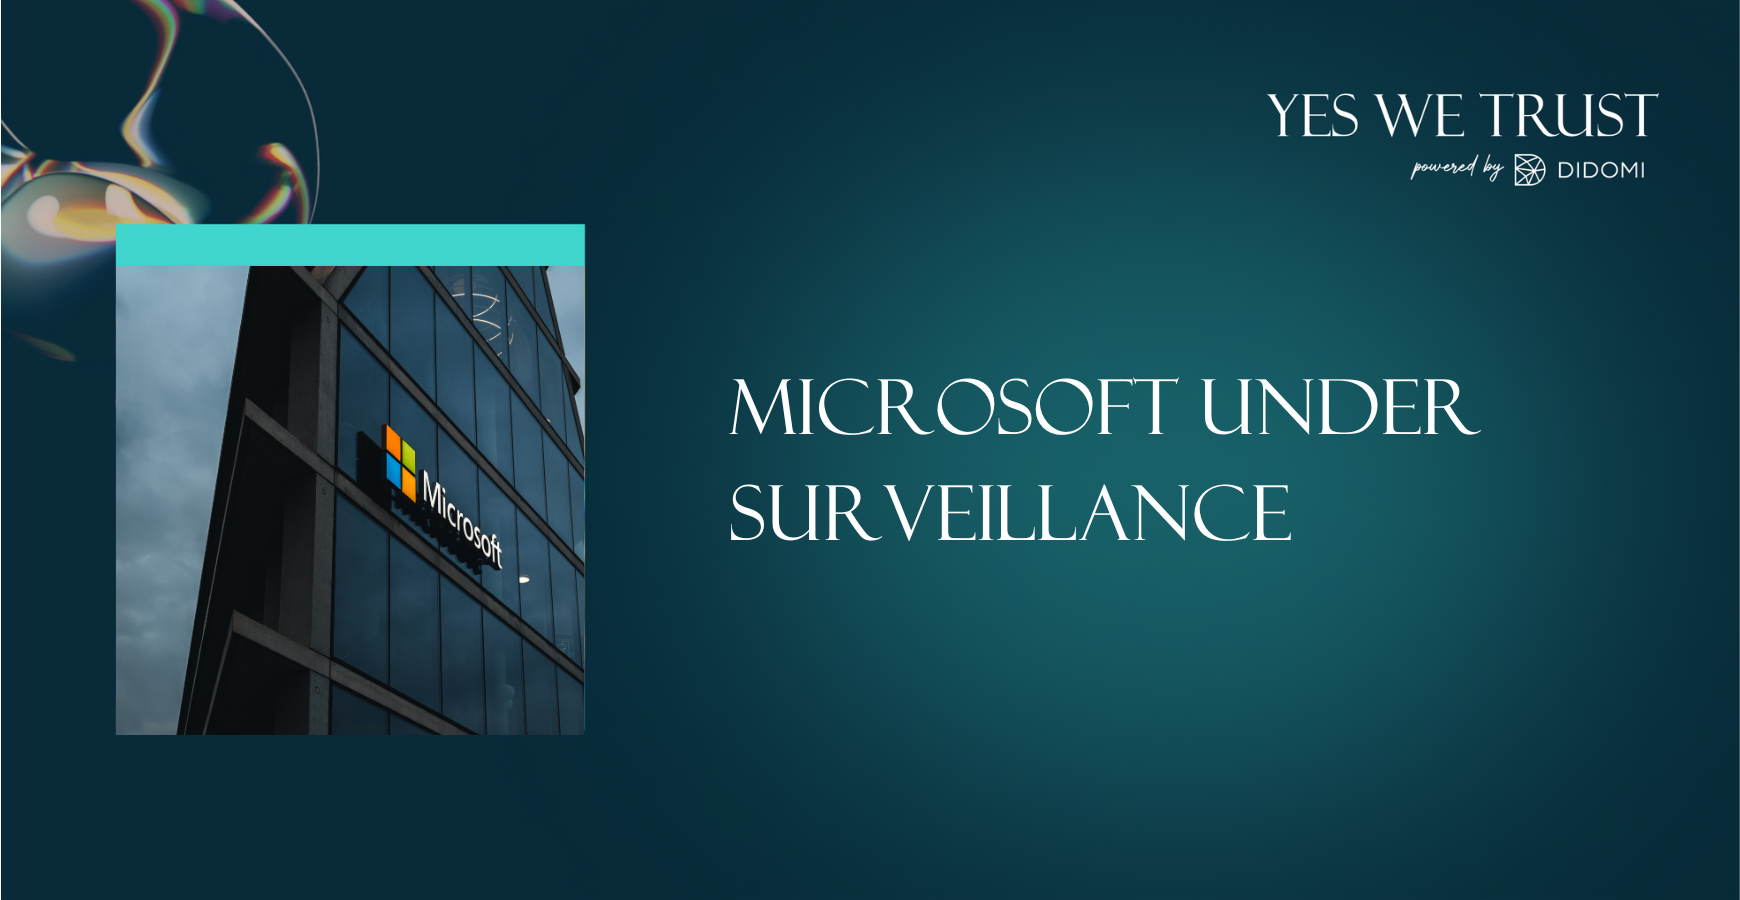 Microsoft under surveillance